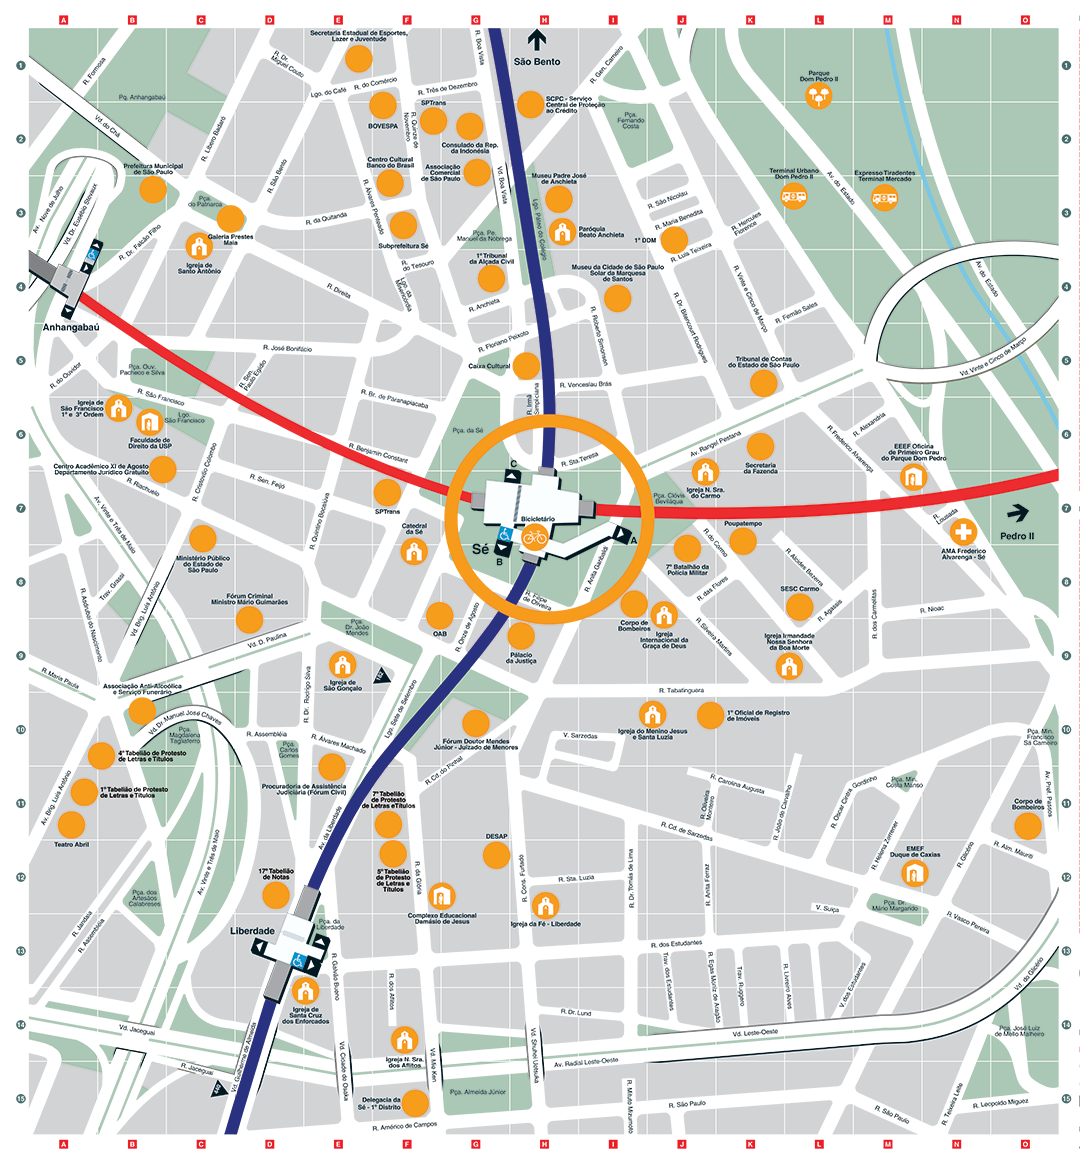 Mapa dos arredores da Estação Sé